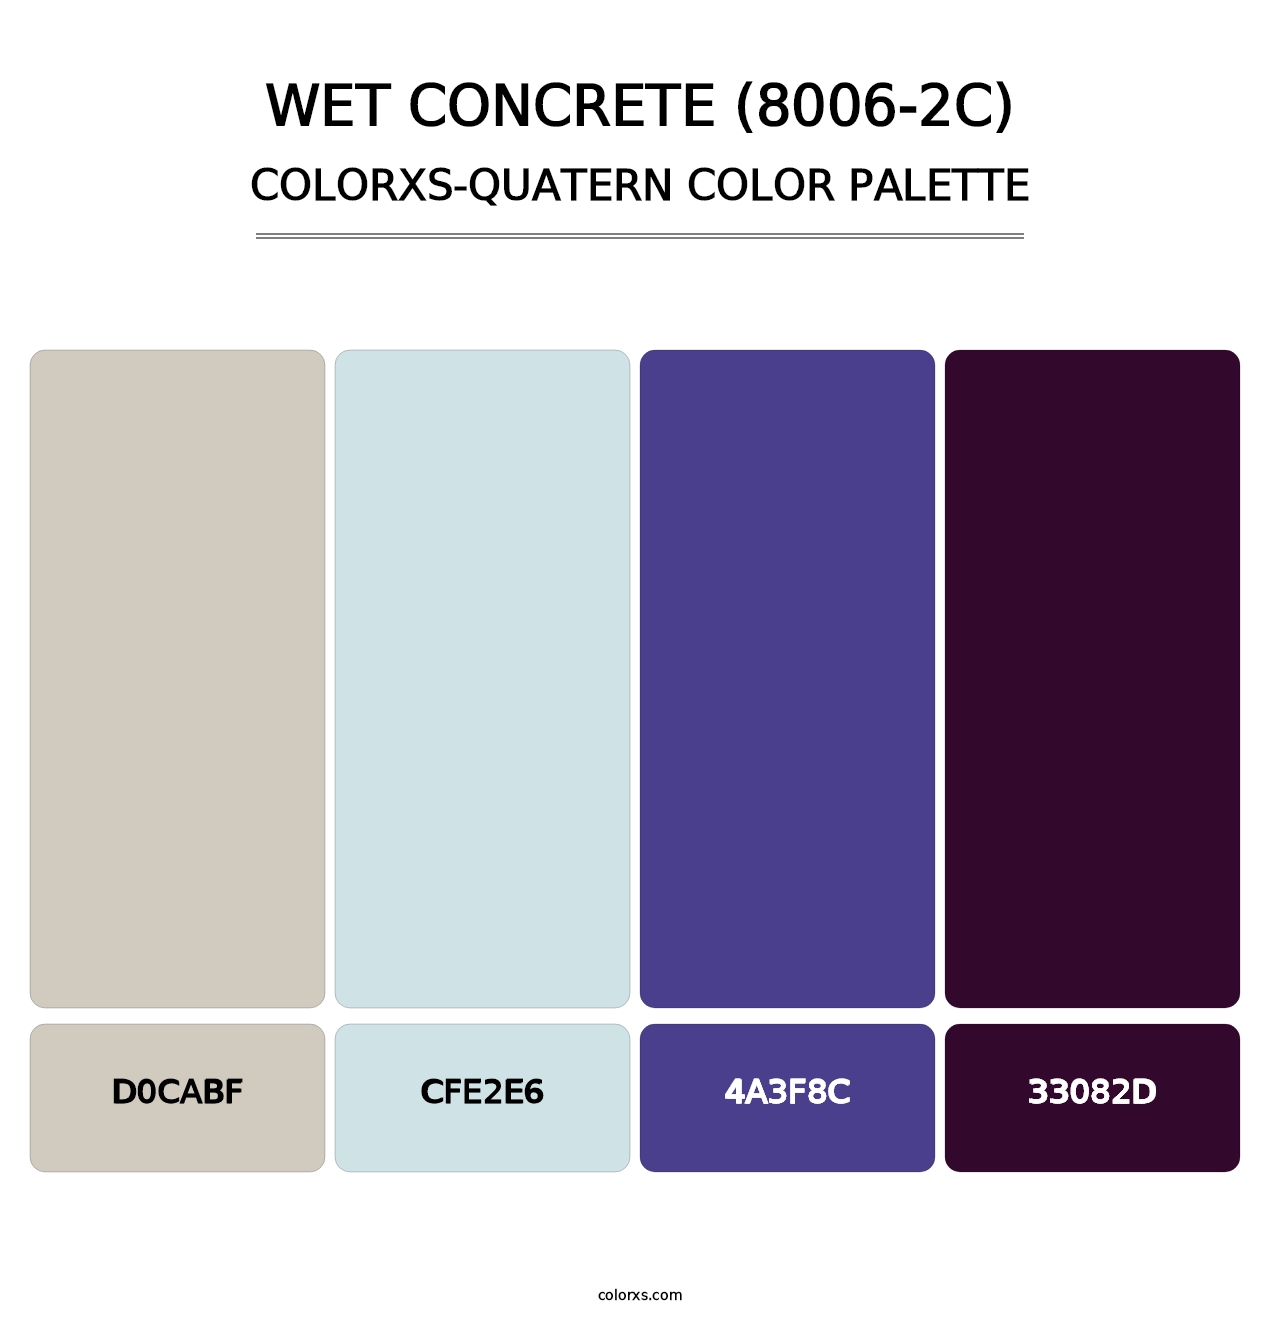 Wet Concrete (8006-2C) - Colorxs Quatern Palette